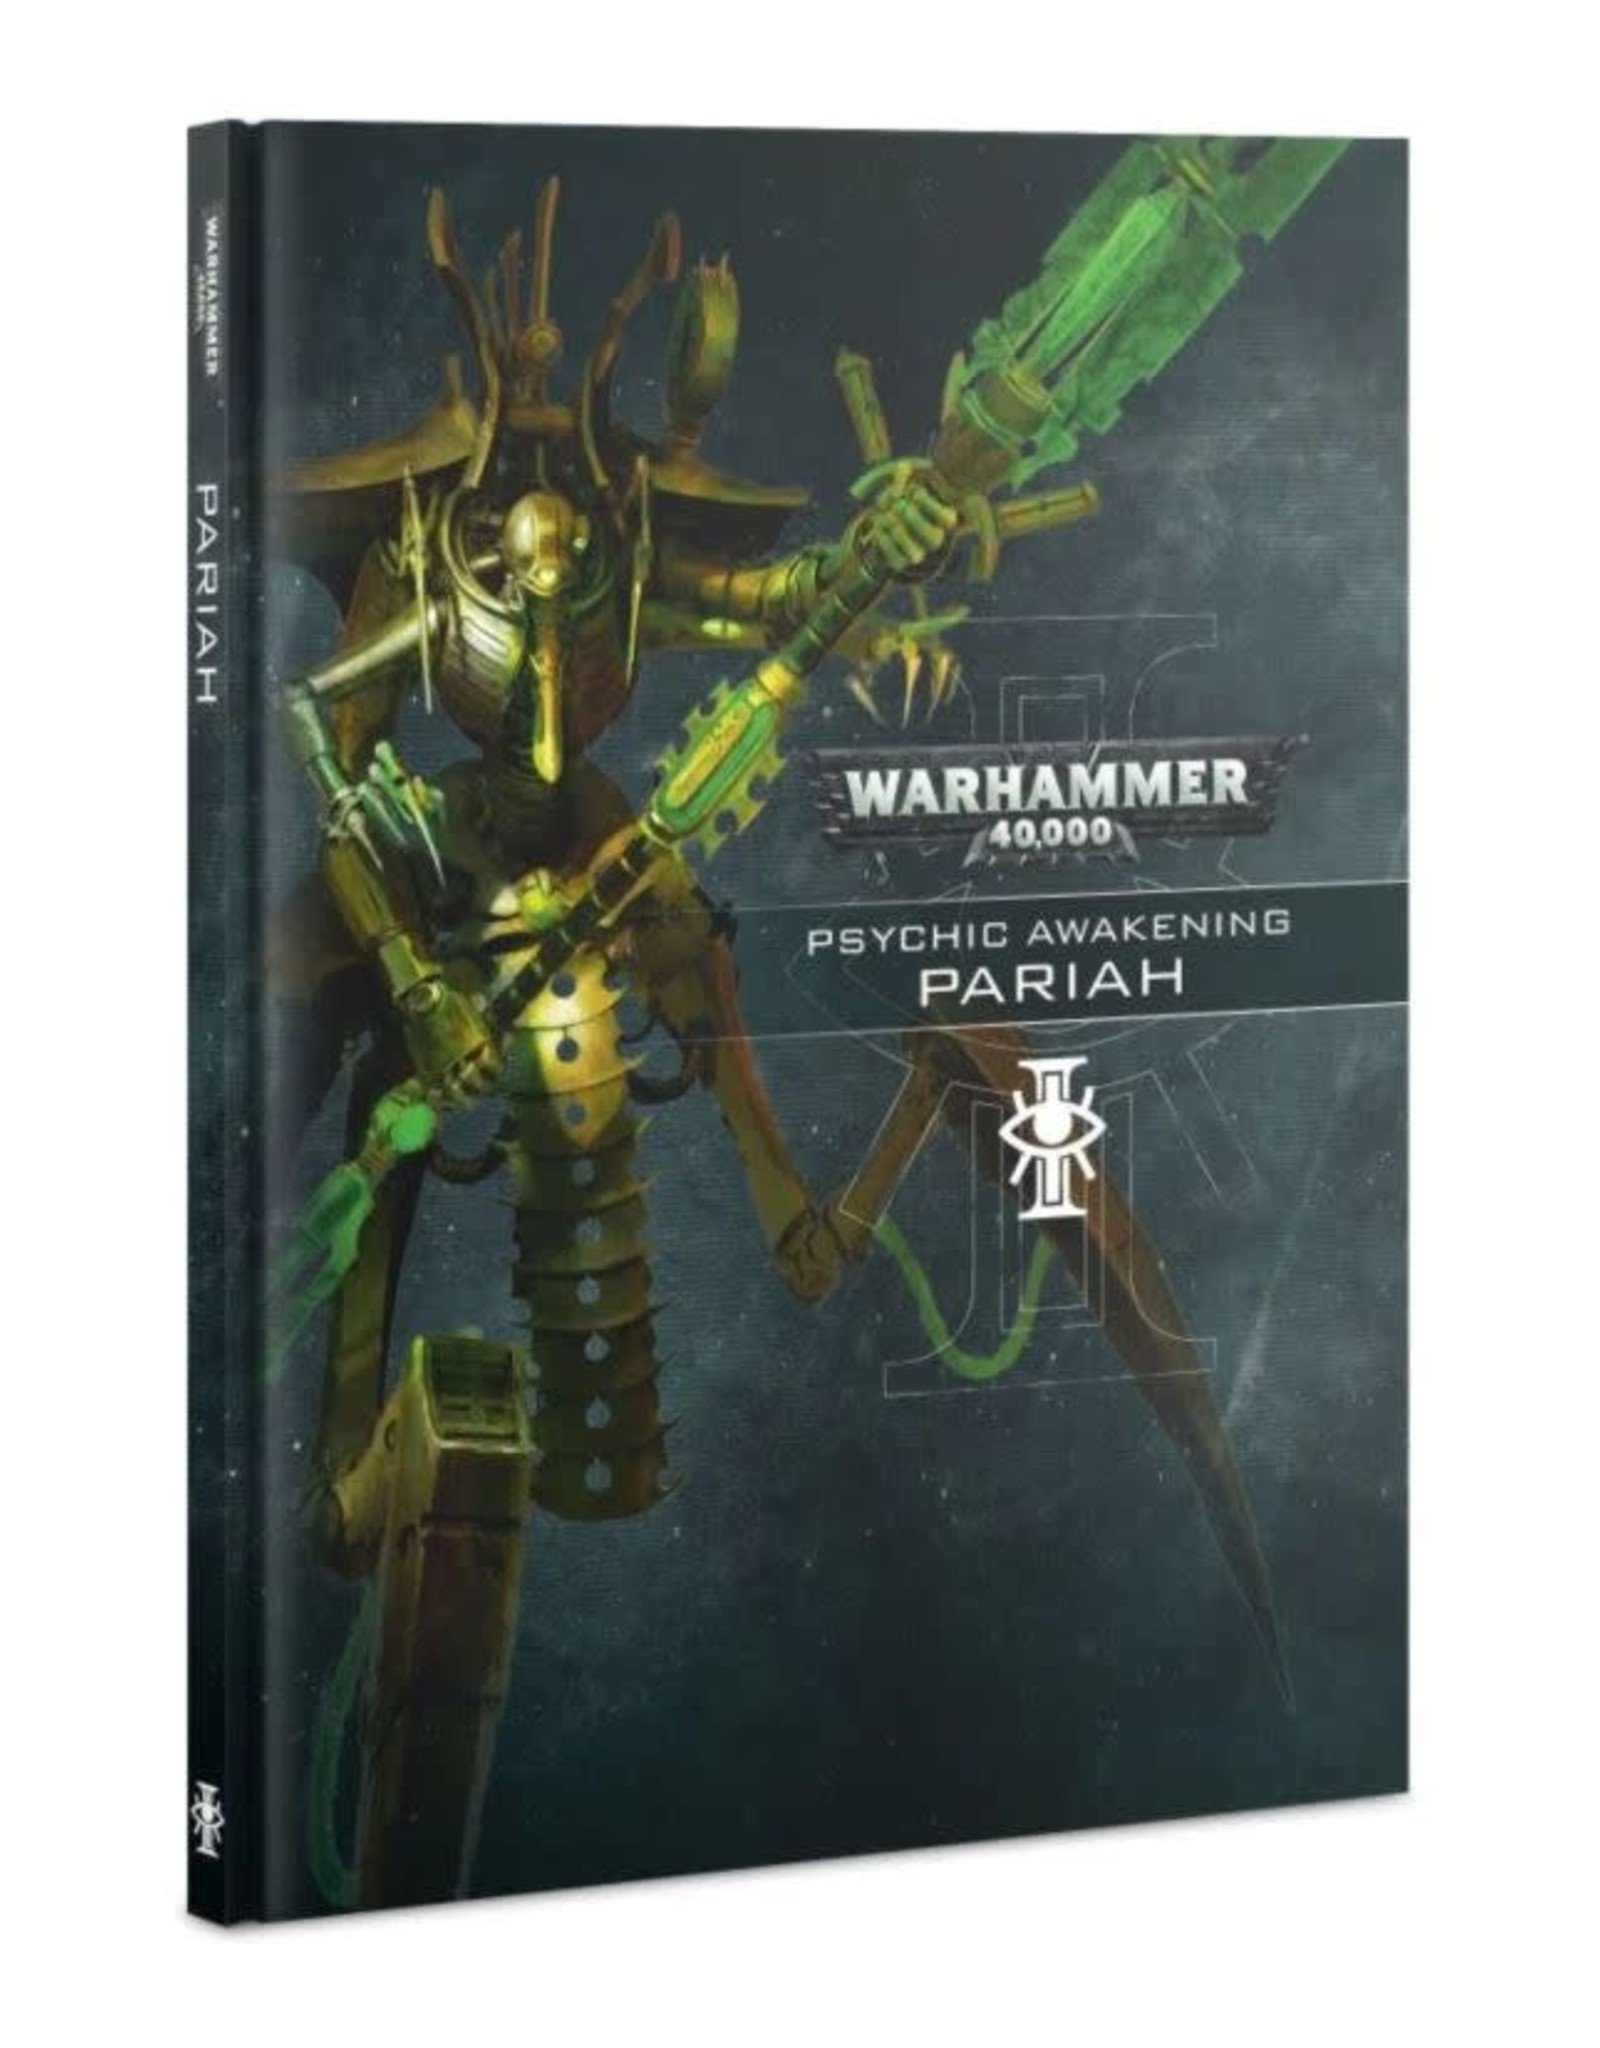 Warhammer 40k Pariah - Psychic Awakening Book 9